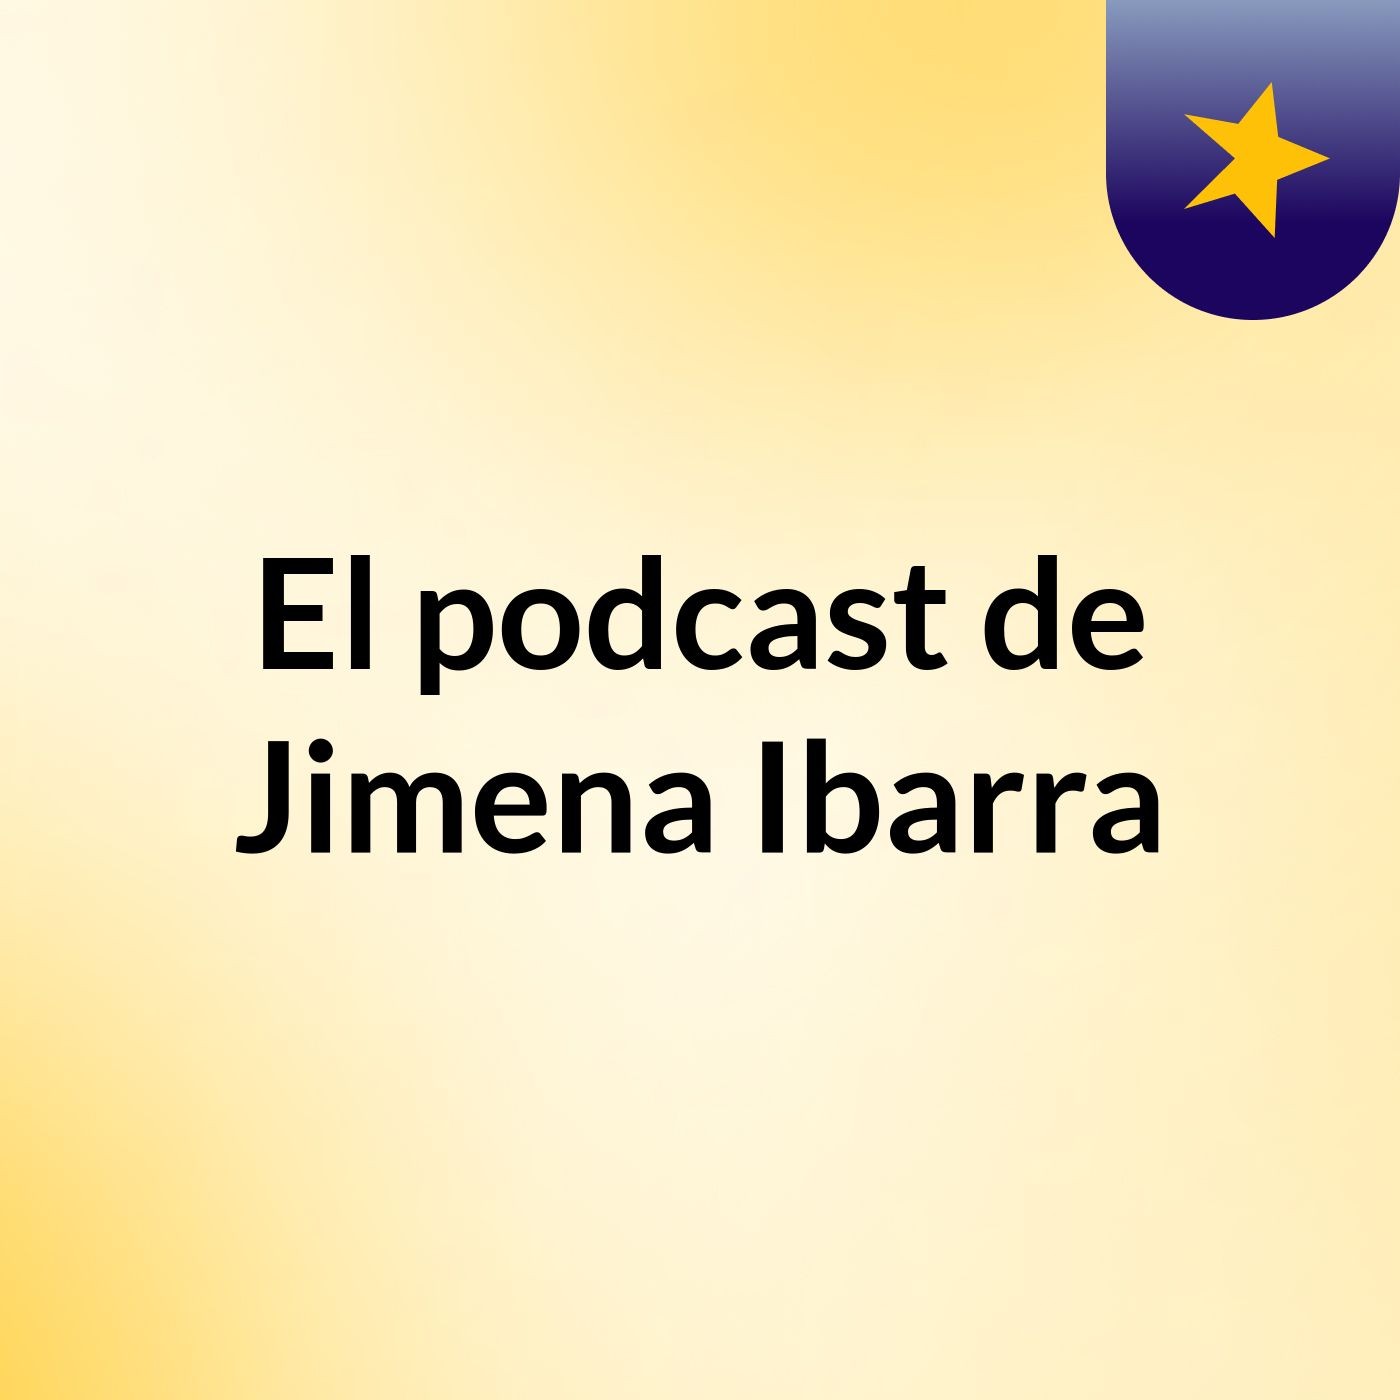 El podcast de Jimena Ibarra